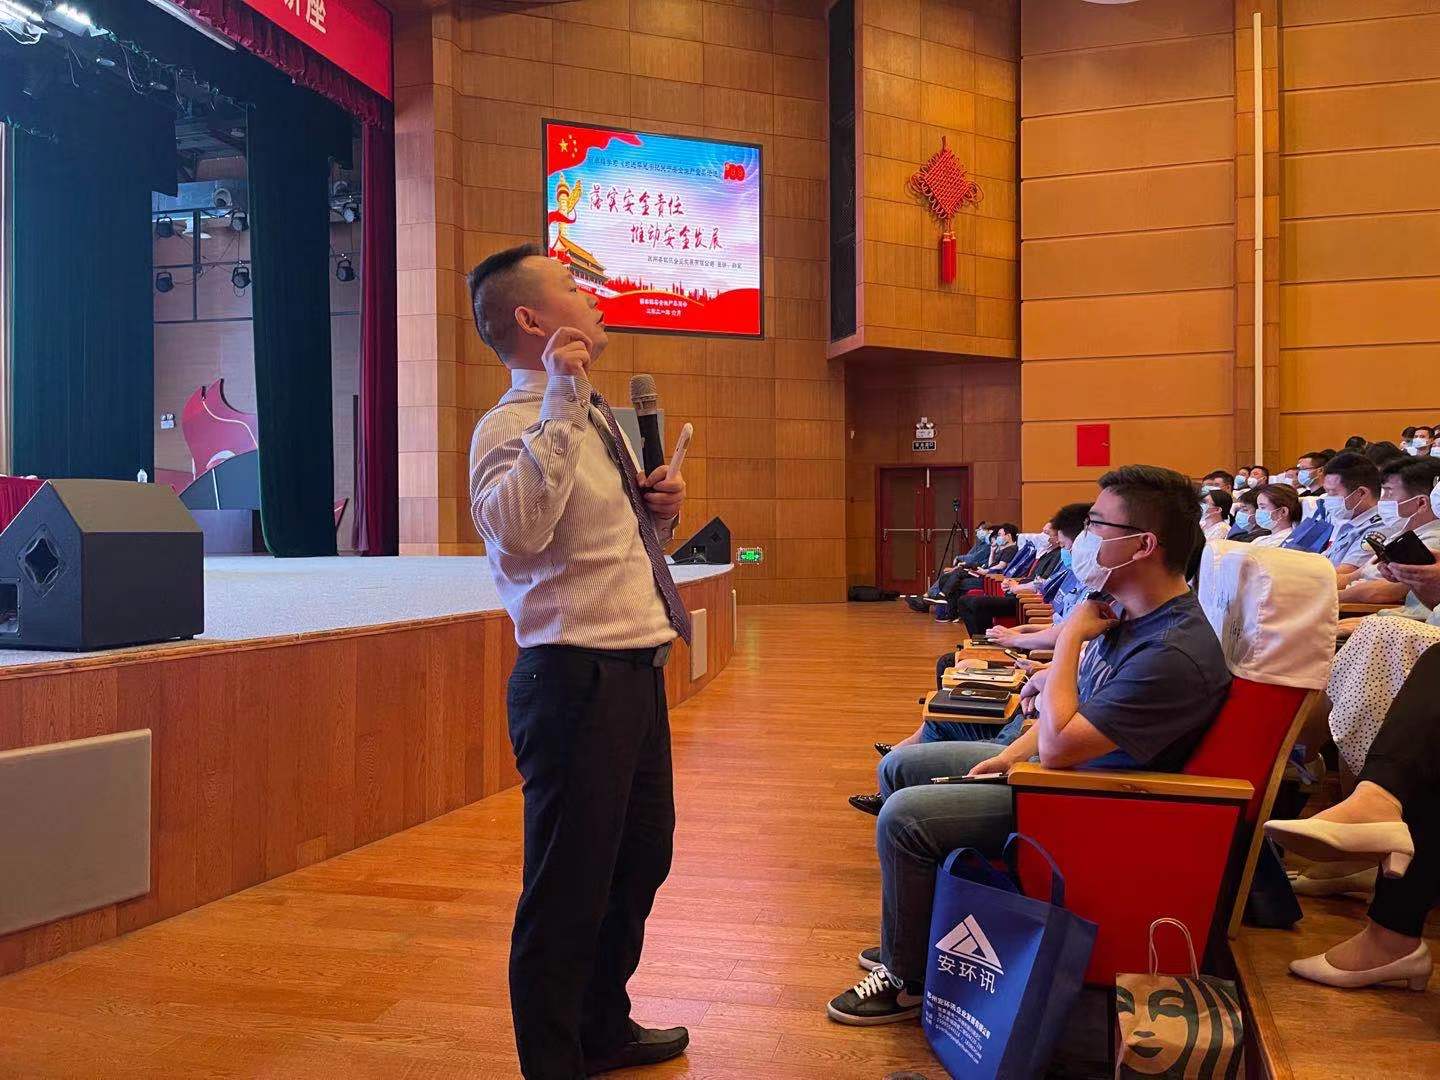 6月4日邹军老师来到南丰为近400位学员讲授《习近平总书记关于安全生产重要论述》课程圆满结束！